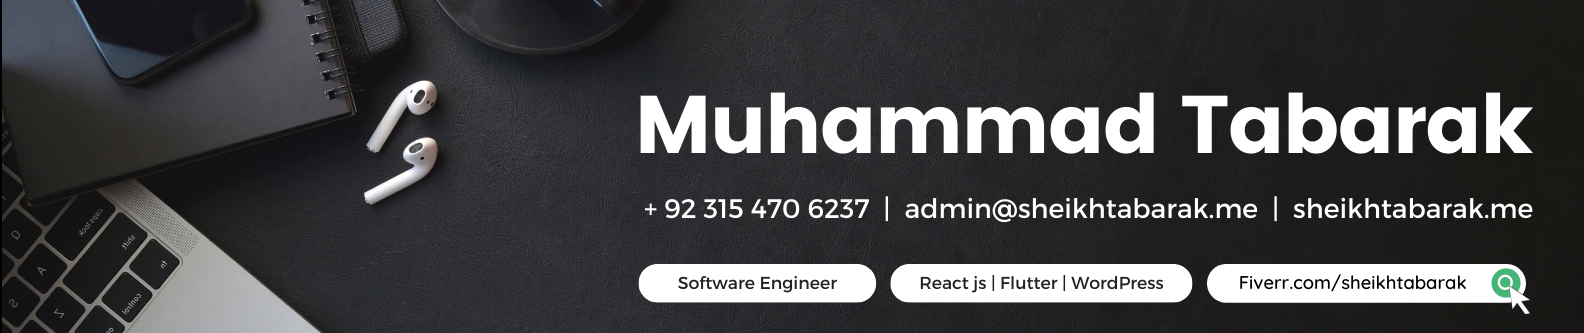 Muhammad Tabarak のプロファイルバナー